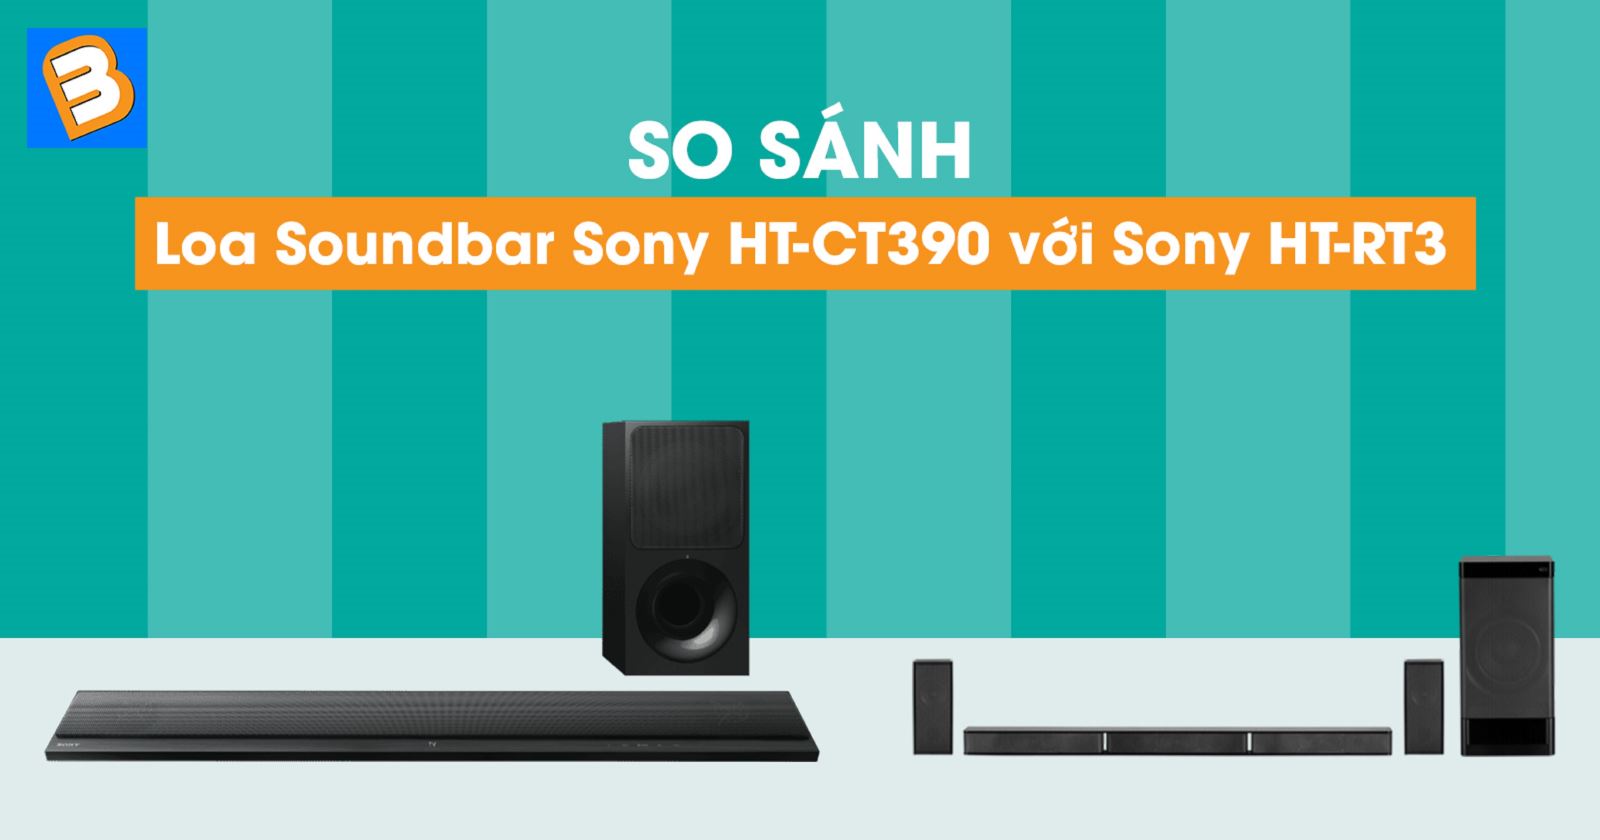 So sánh Loa Soundbar Sony HT-CT390 với Sony HT-RT3